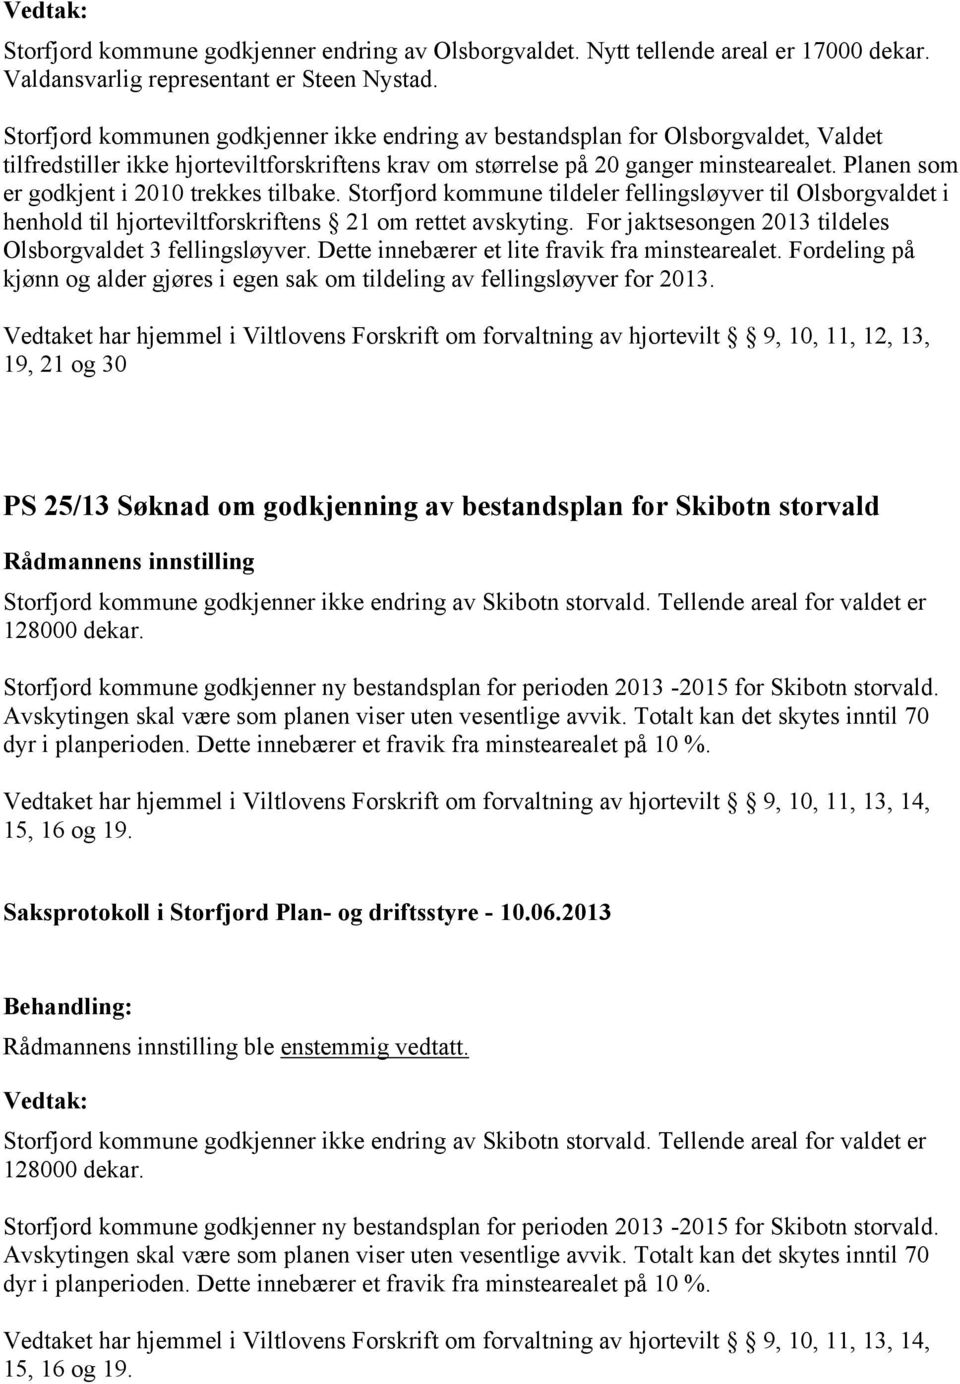 Planen som er godkjent i 2010 trekkes tilbake. Storfjord kommune tildeler fellingsløyver til Olsborgvaldet i henhold til hjorteviltforskriftens 21 om rettet avskyting.